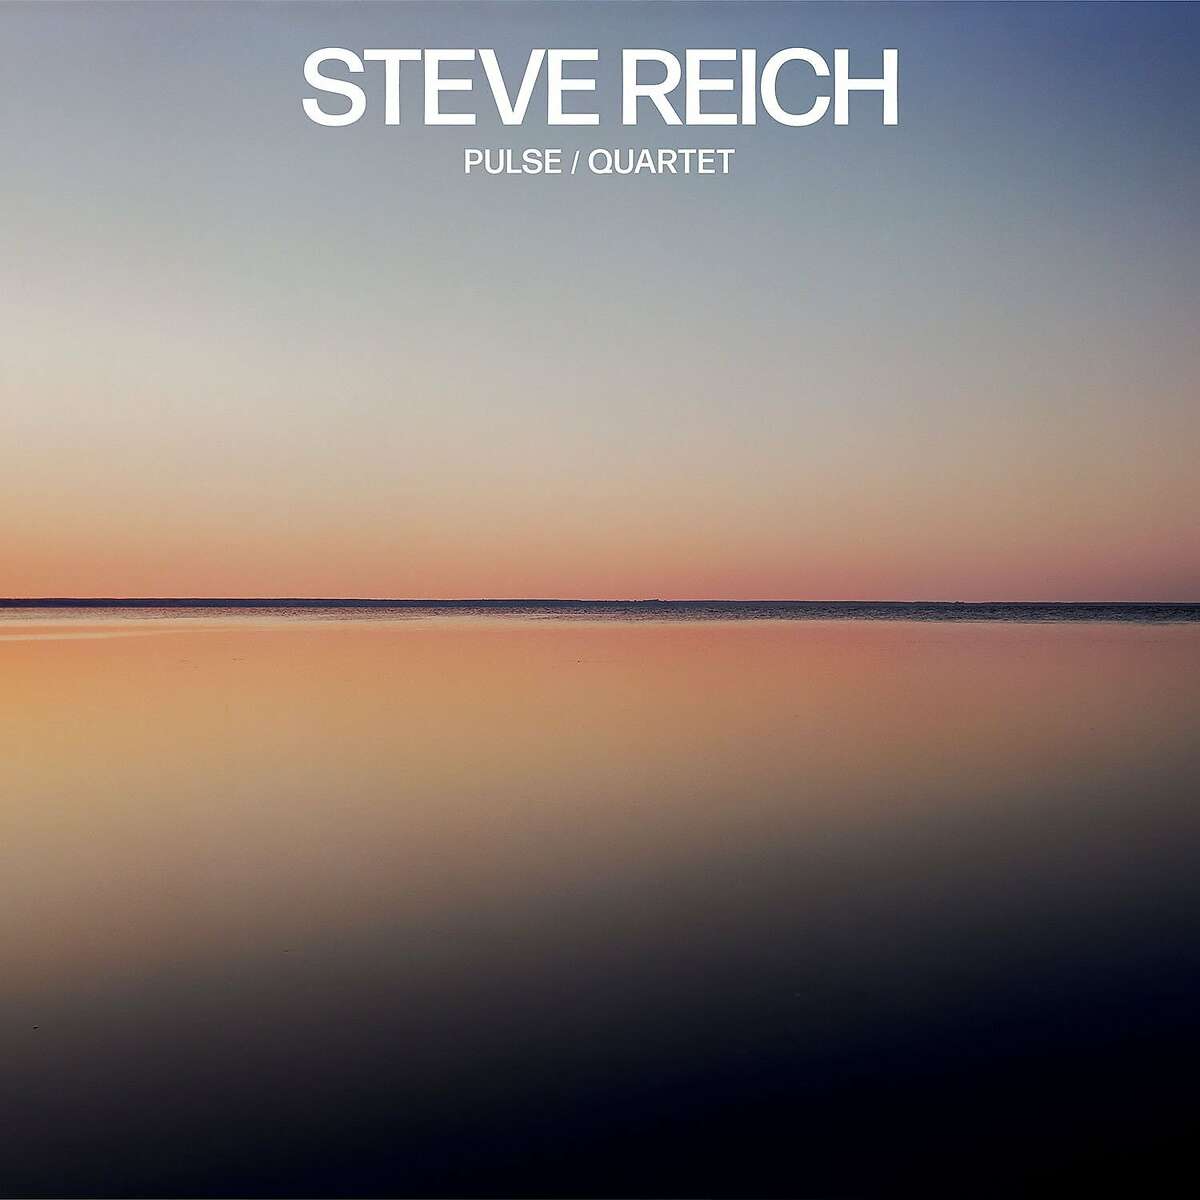 Steve Reich, "Pulse/Quartet"